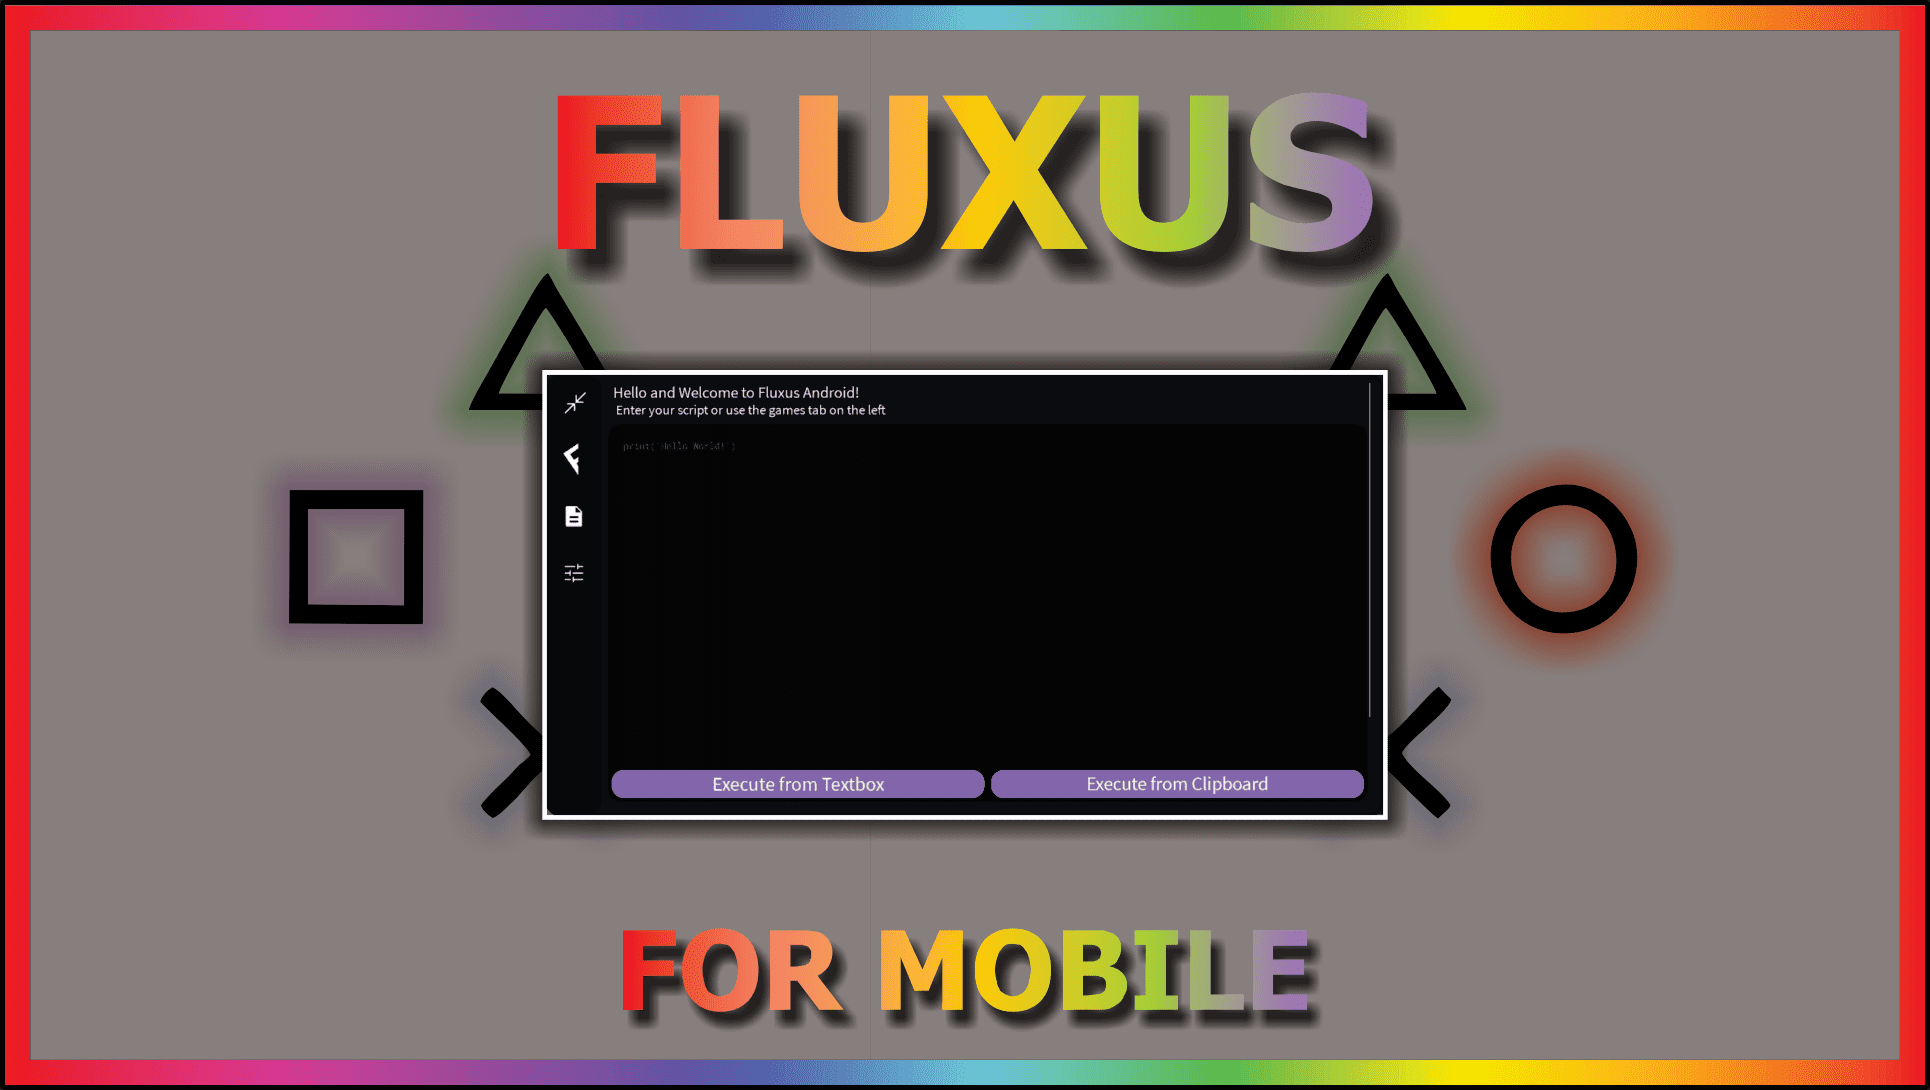 Fluxus Executor Mobile New Update FLUXUS DOWNLOAD Fluxus Script